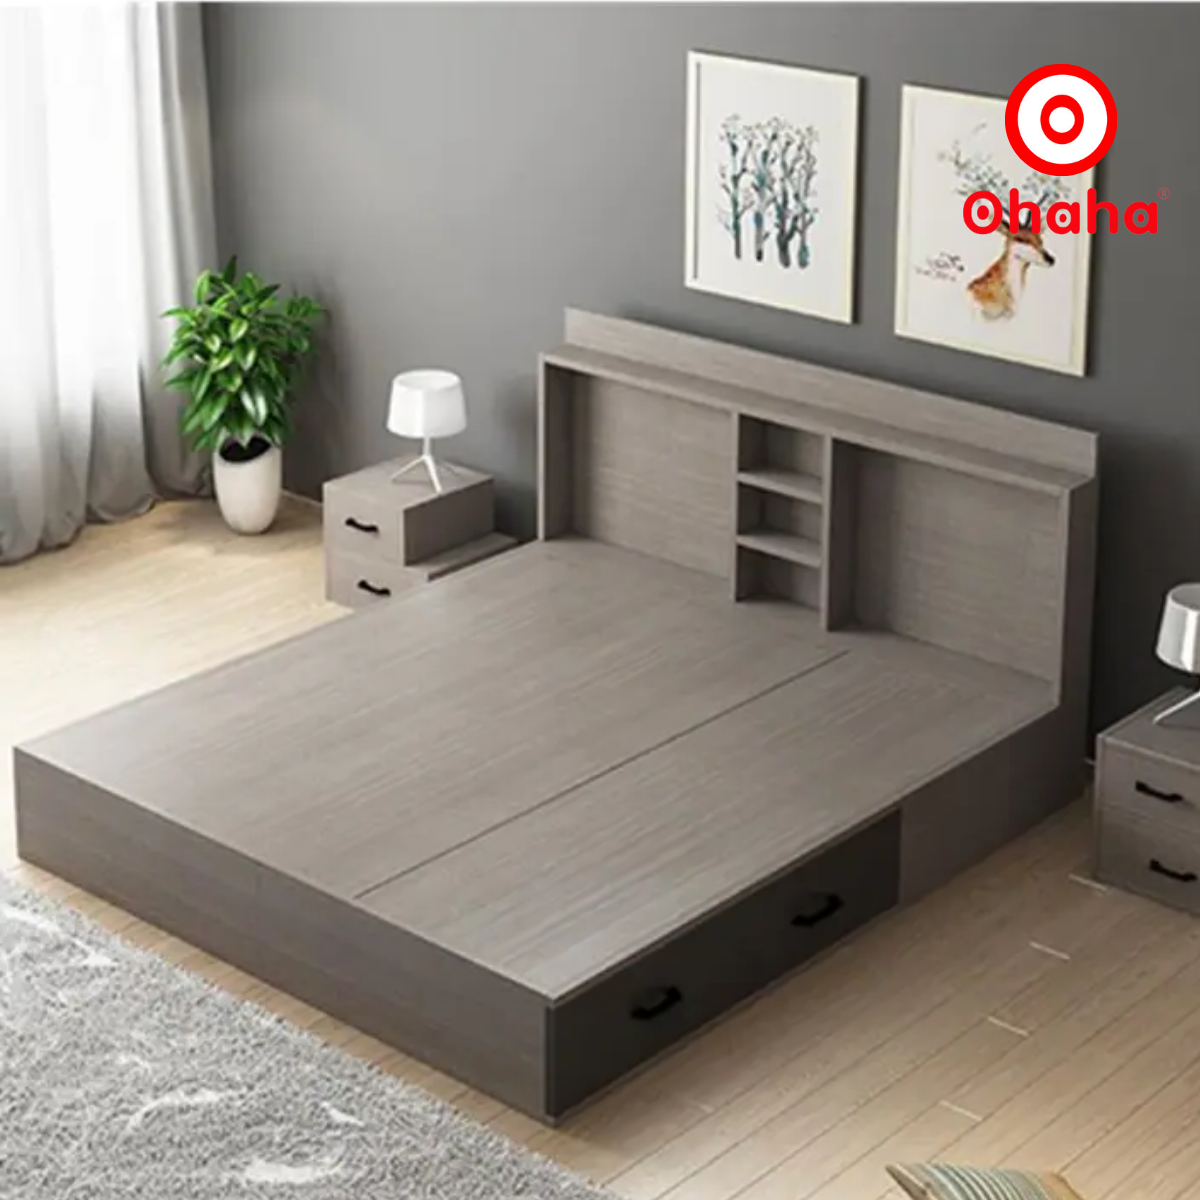 Hình ảnh [Miễn phí vận chuyển & lắp đặt] Giường ngủ thông minh cao cấp bọc nệm đầu giường gỗ công nghiệp Ohaha - GN008